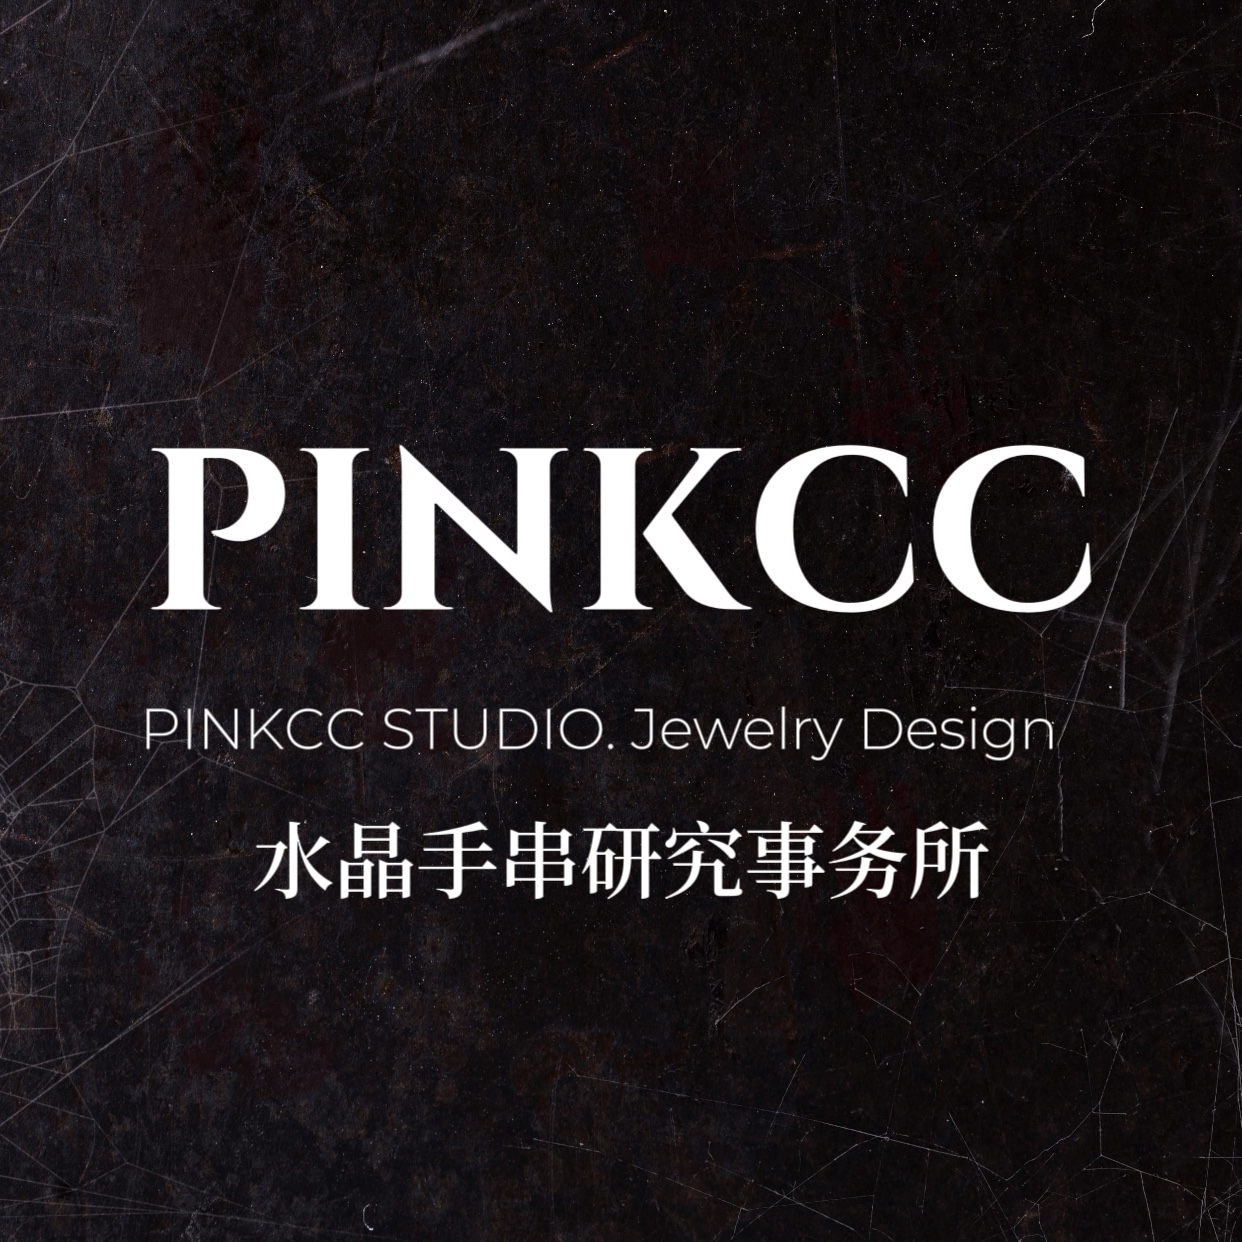  PINKCC手串研究事务所